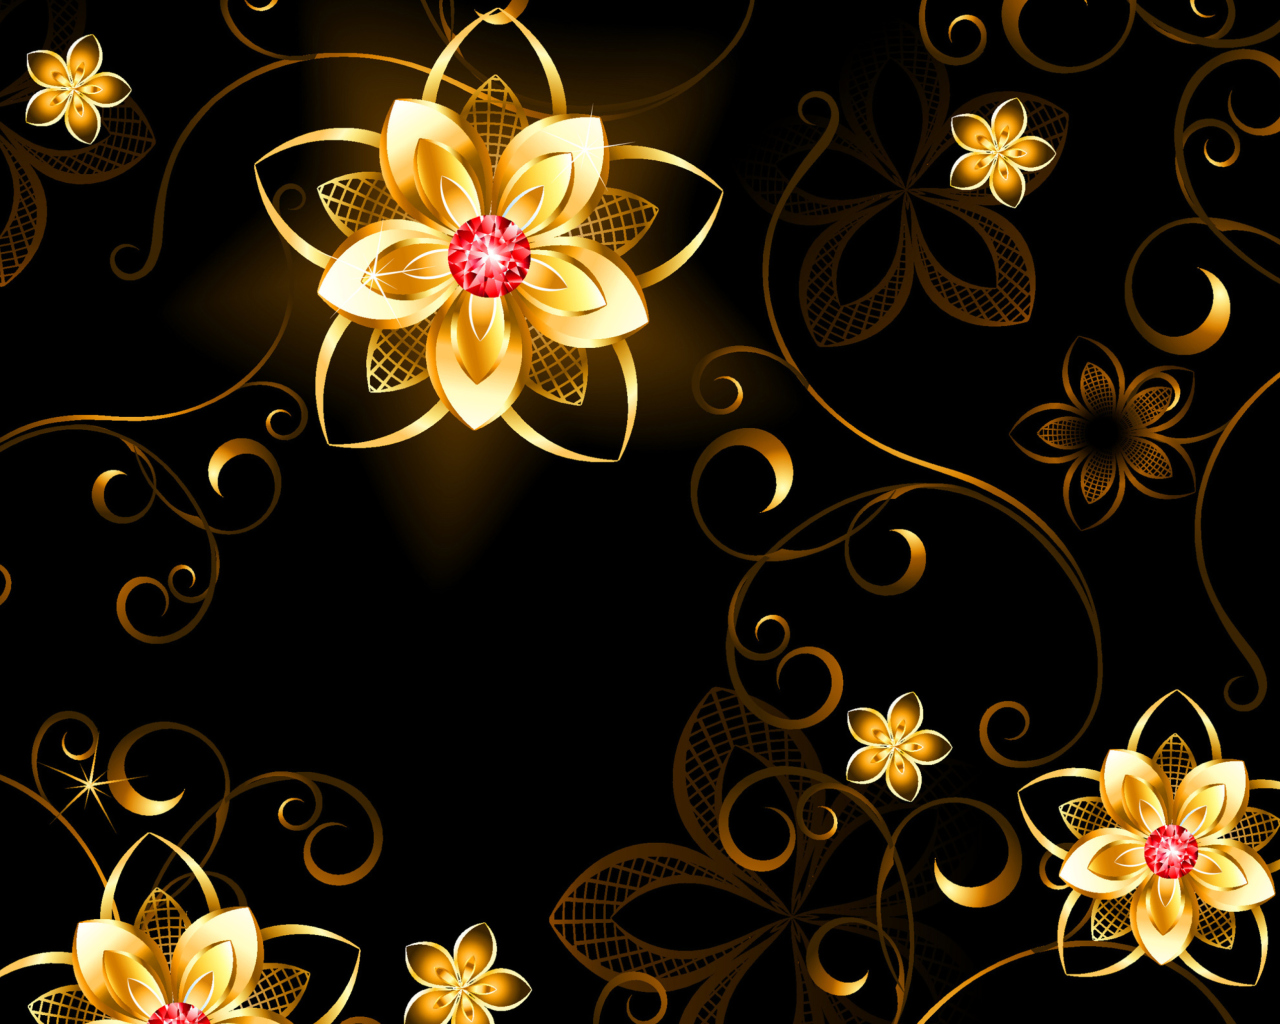 Das Golden Flowers Wallpaper 1280x1024